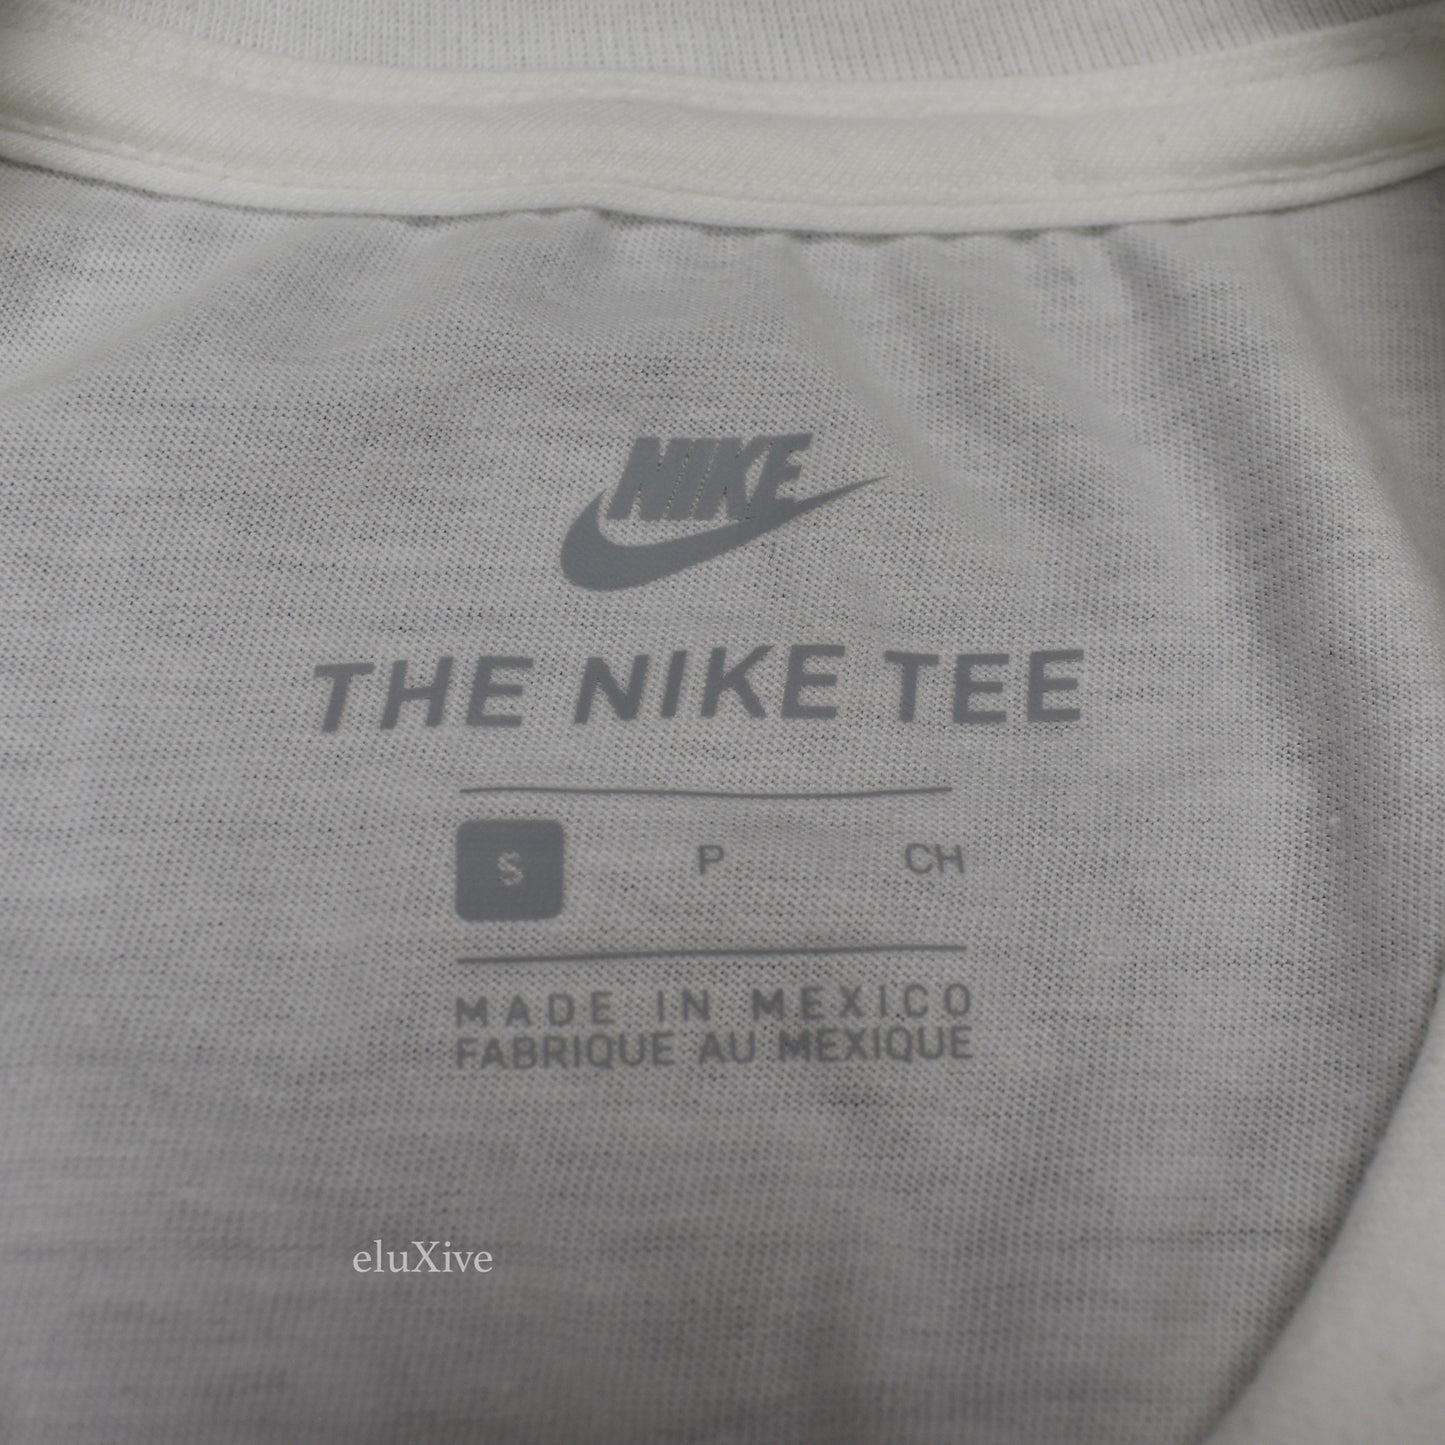 Nike - Las Vegas Exclusive Logo T-Shirt